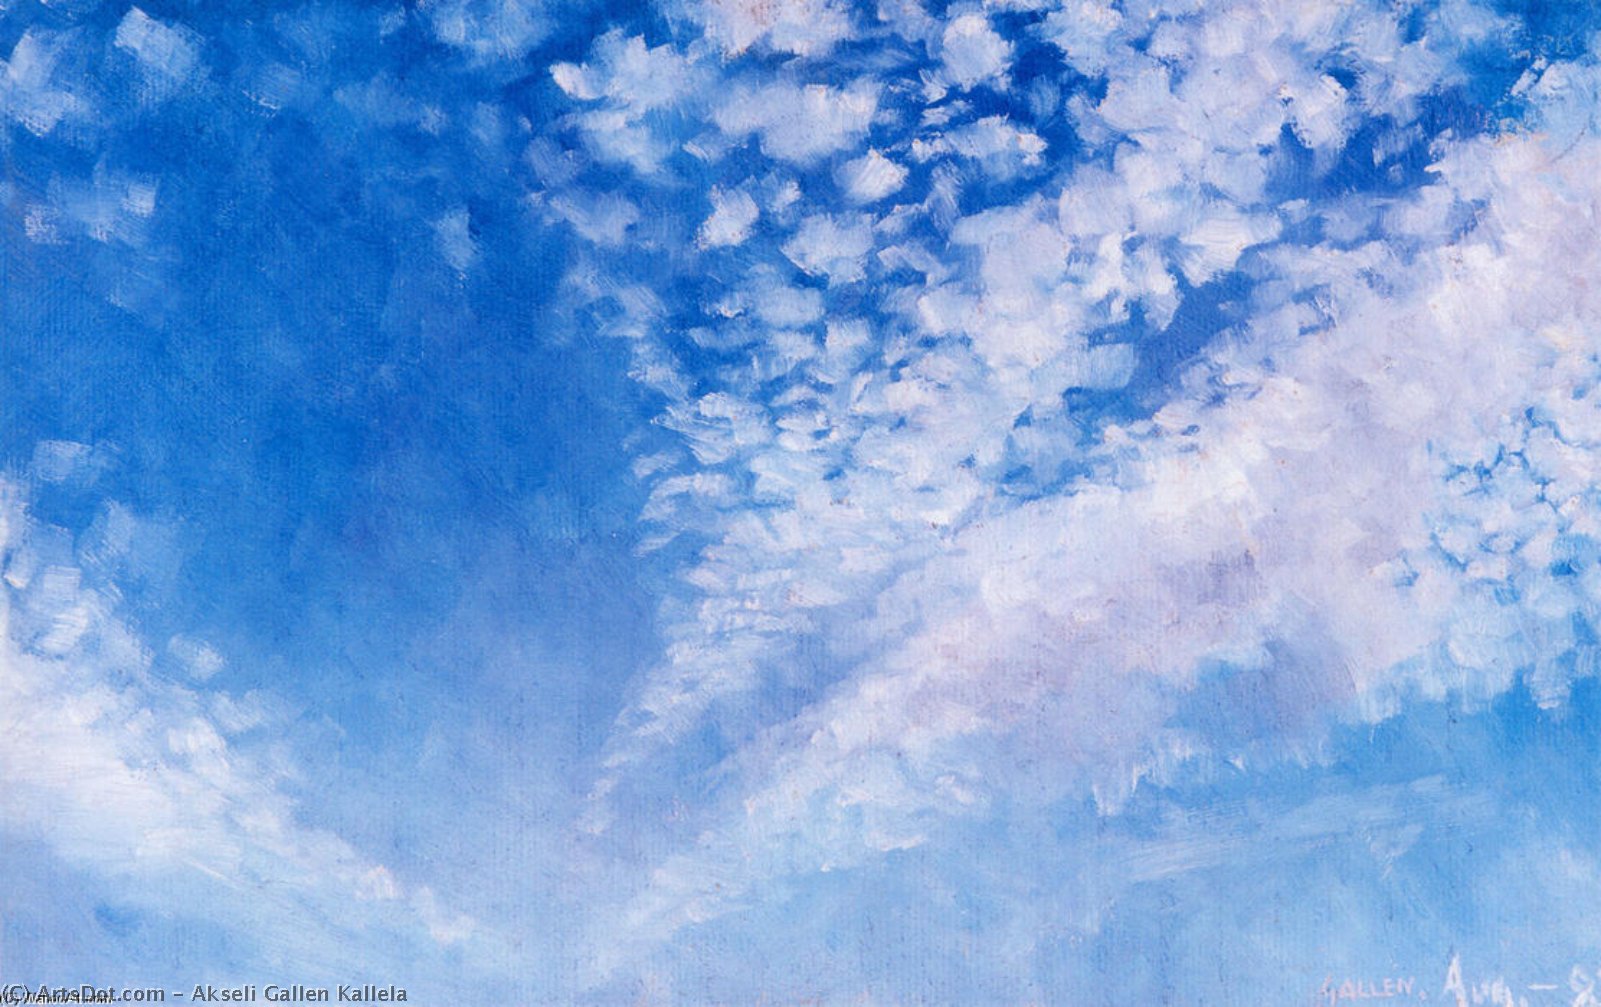 WikiOO.org - Encyclopedia of Fine Arts - Festés, Grafika Akseli Gallen Kallela - Clouds